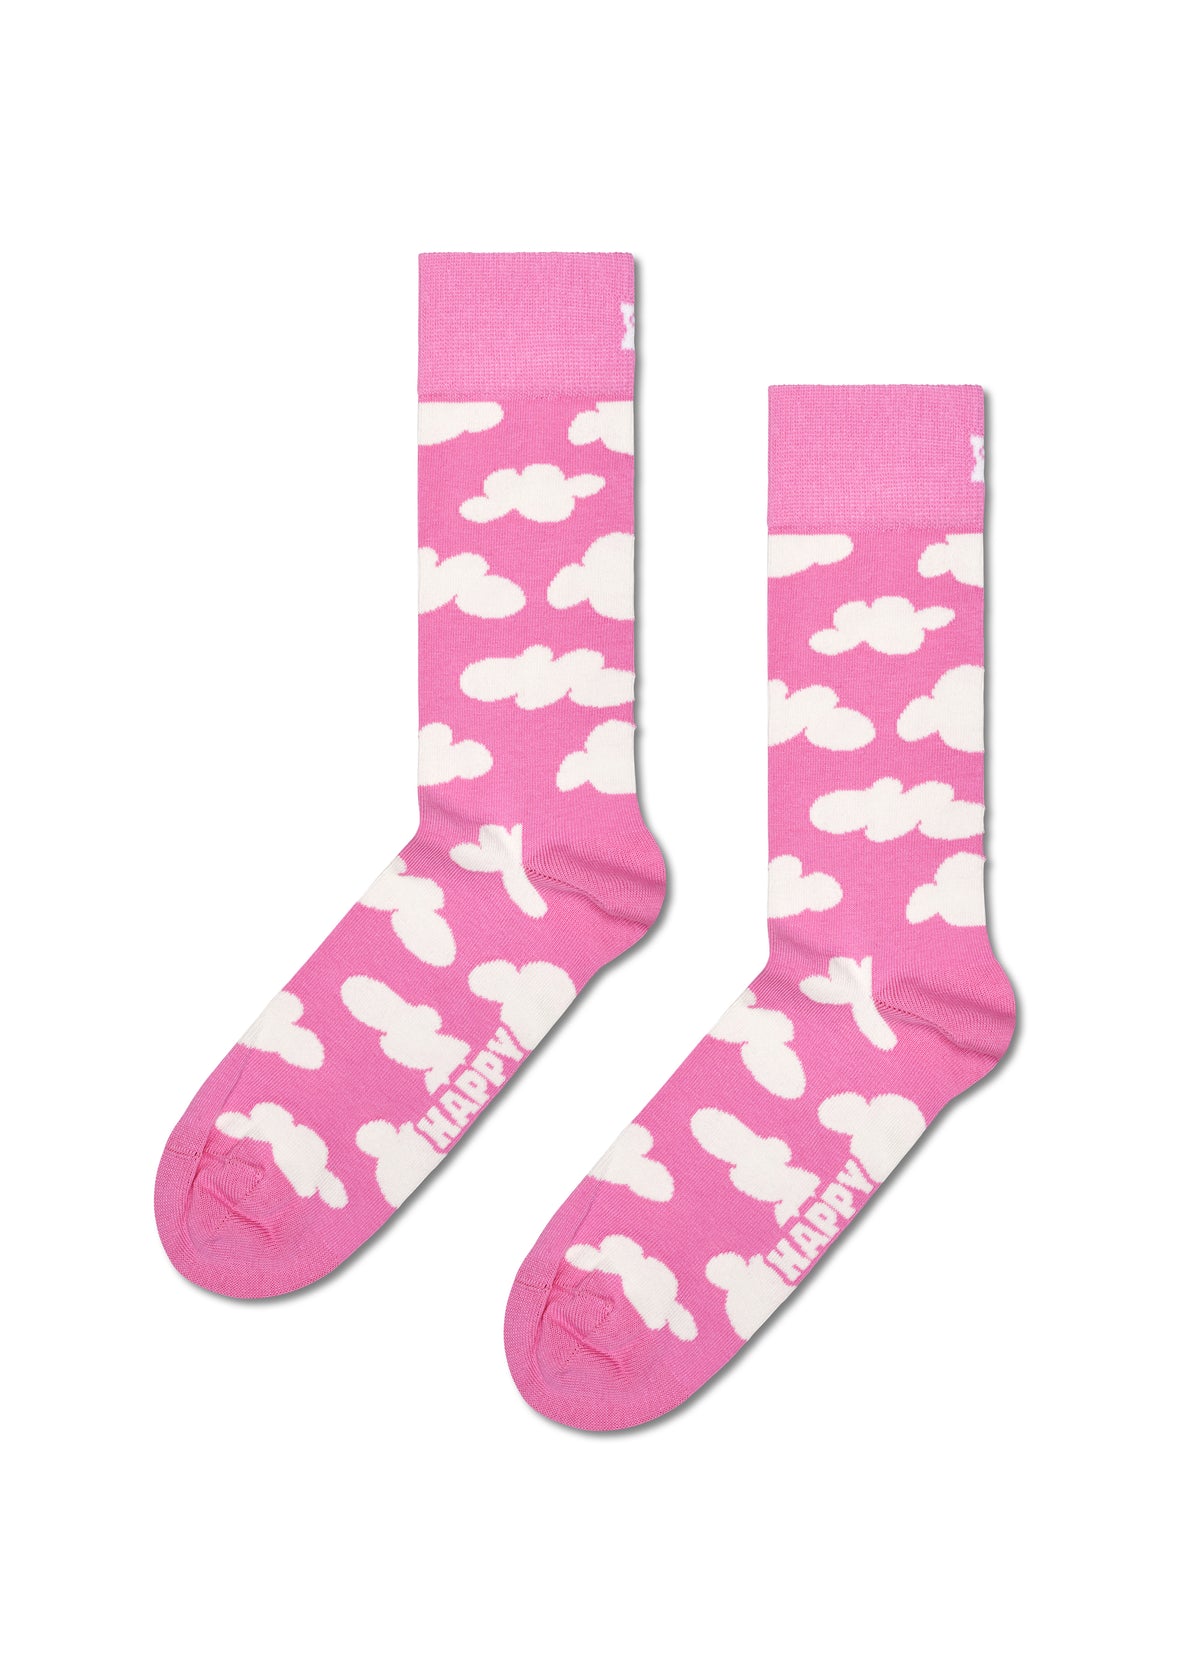 Aikuisten sukat - Cloudy Pink